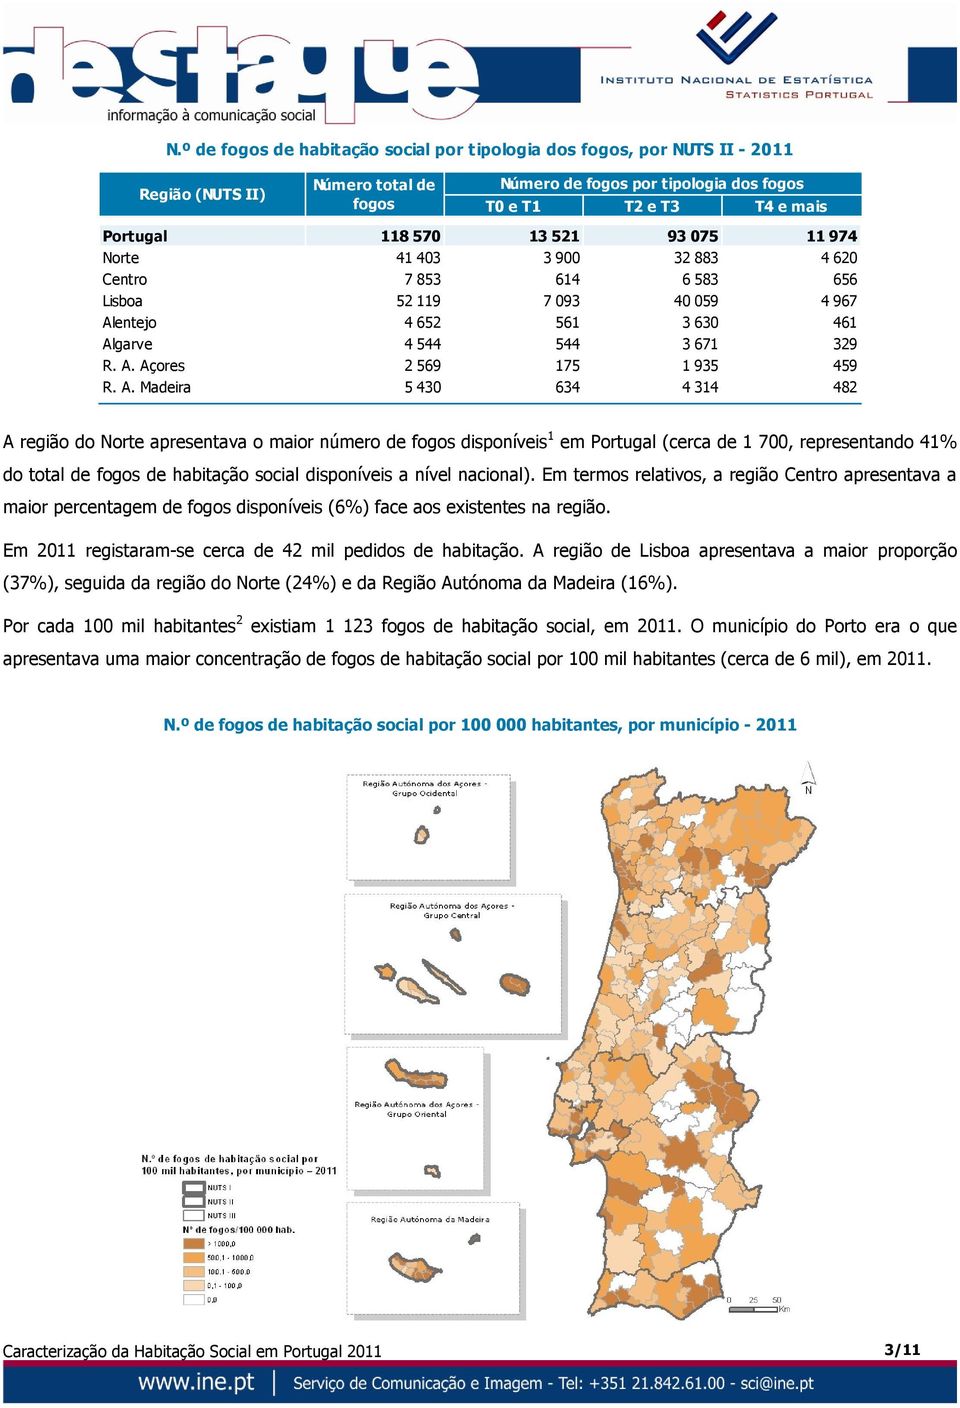 A. Madeira 5 430 634 4 314 482 A região do Norte apresentava o maior número de fogos disponíveis 1 em Portugal (cerca de 1 700, representando 41% do total de fogos de habitação social disponíveis a